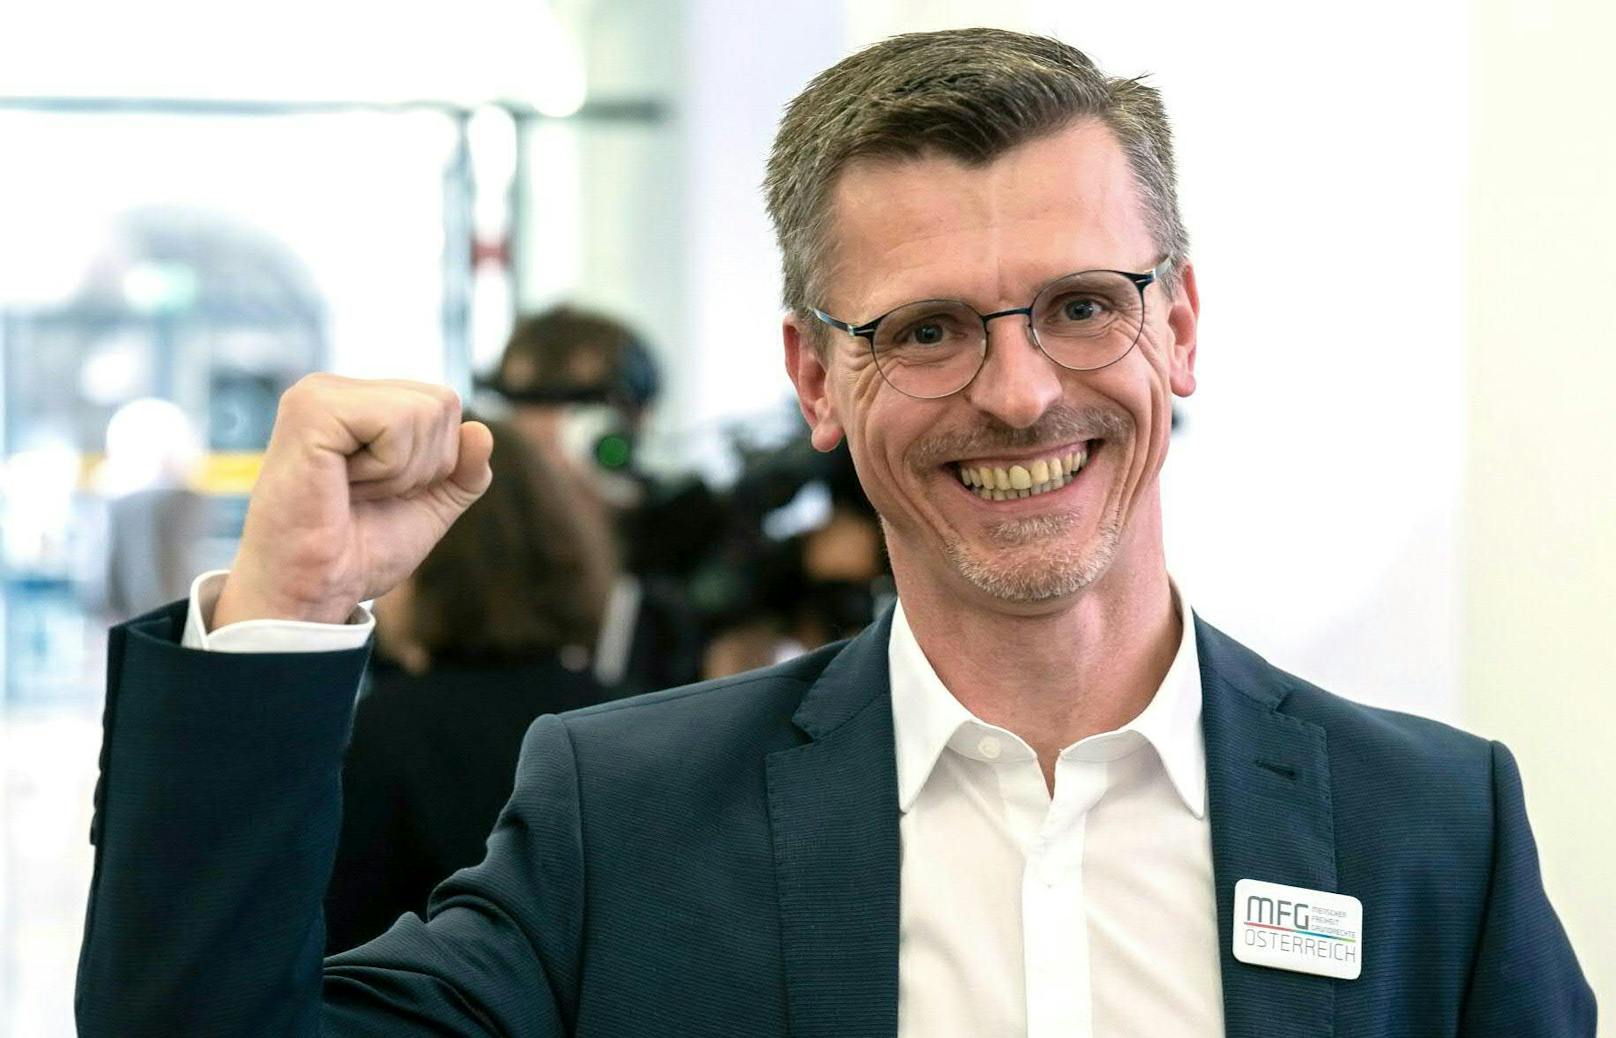 Joachim Aigner, Spitzenkandidat der Partei MFG, ist der große Gewinner.